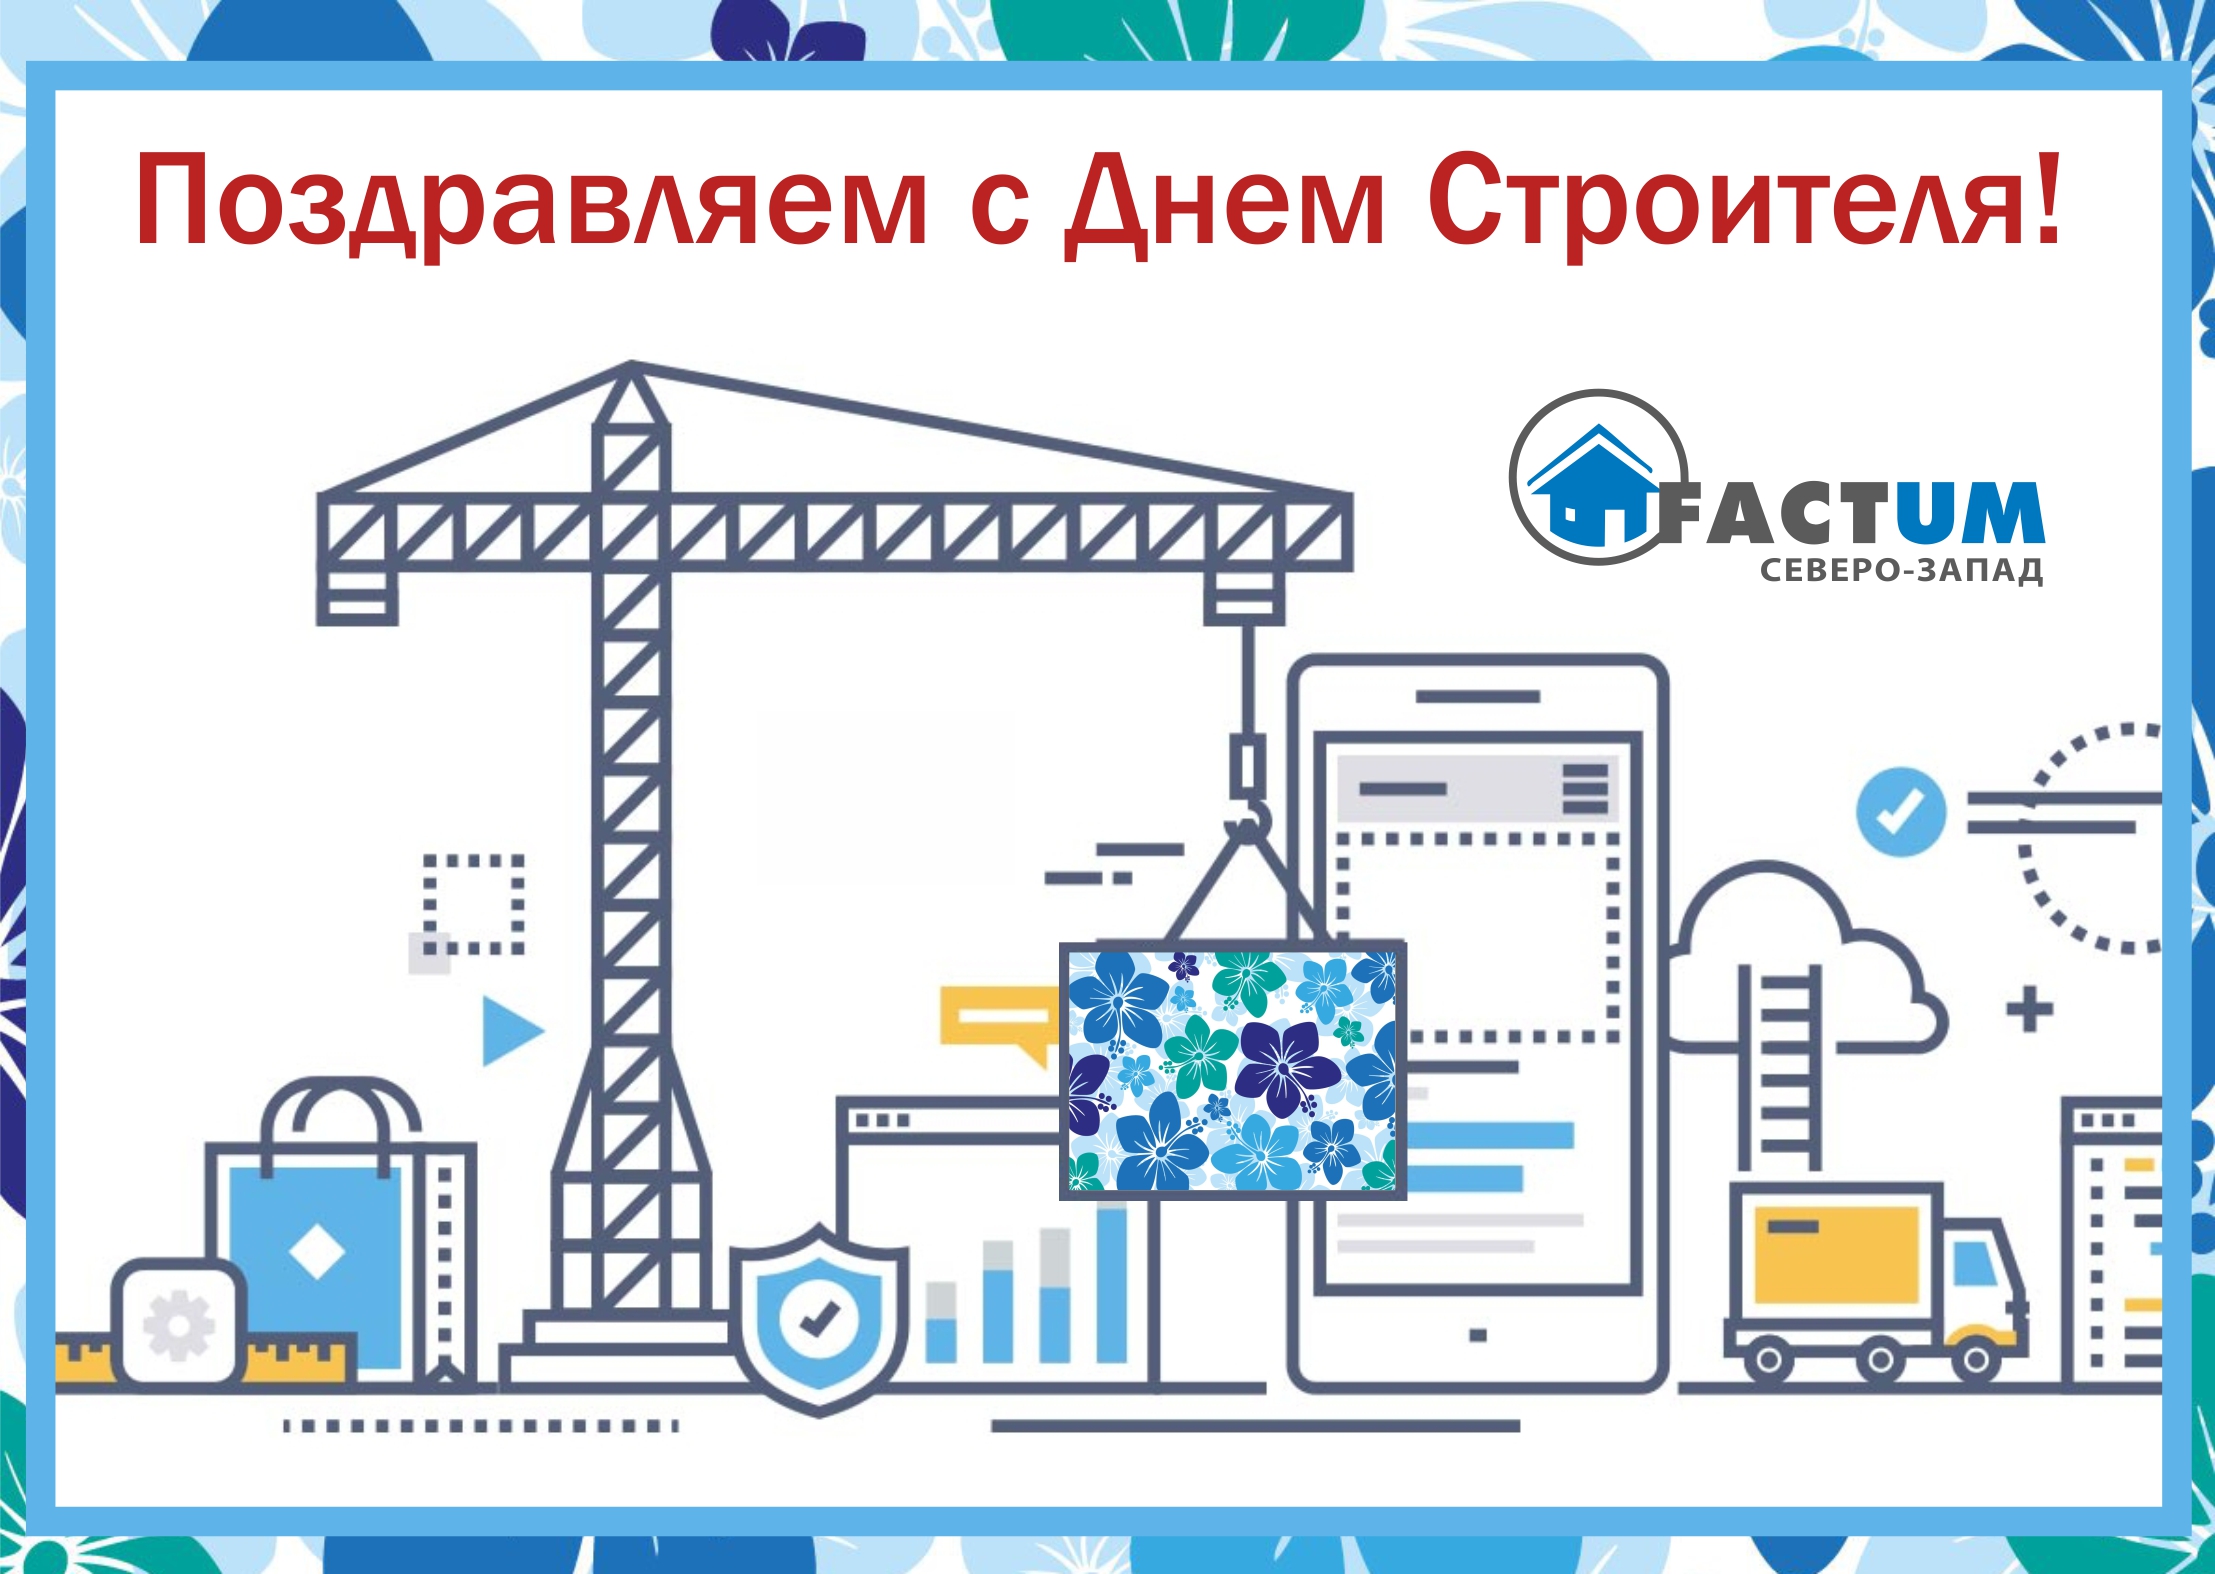 2 Компания «Фактум Северо-Запад», Санкт-Петербург | Гидроизоляция мостов